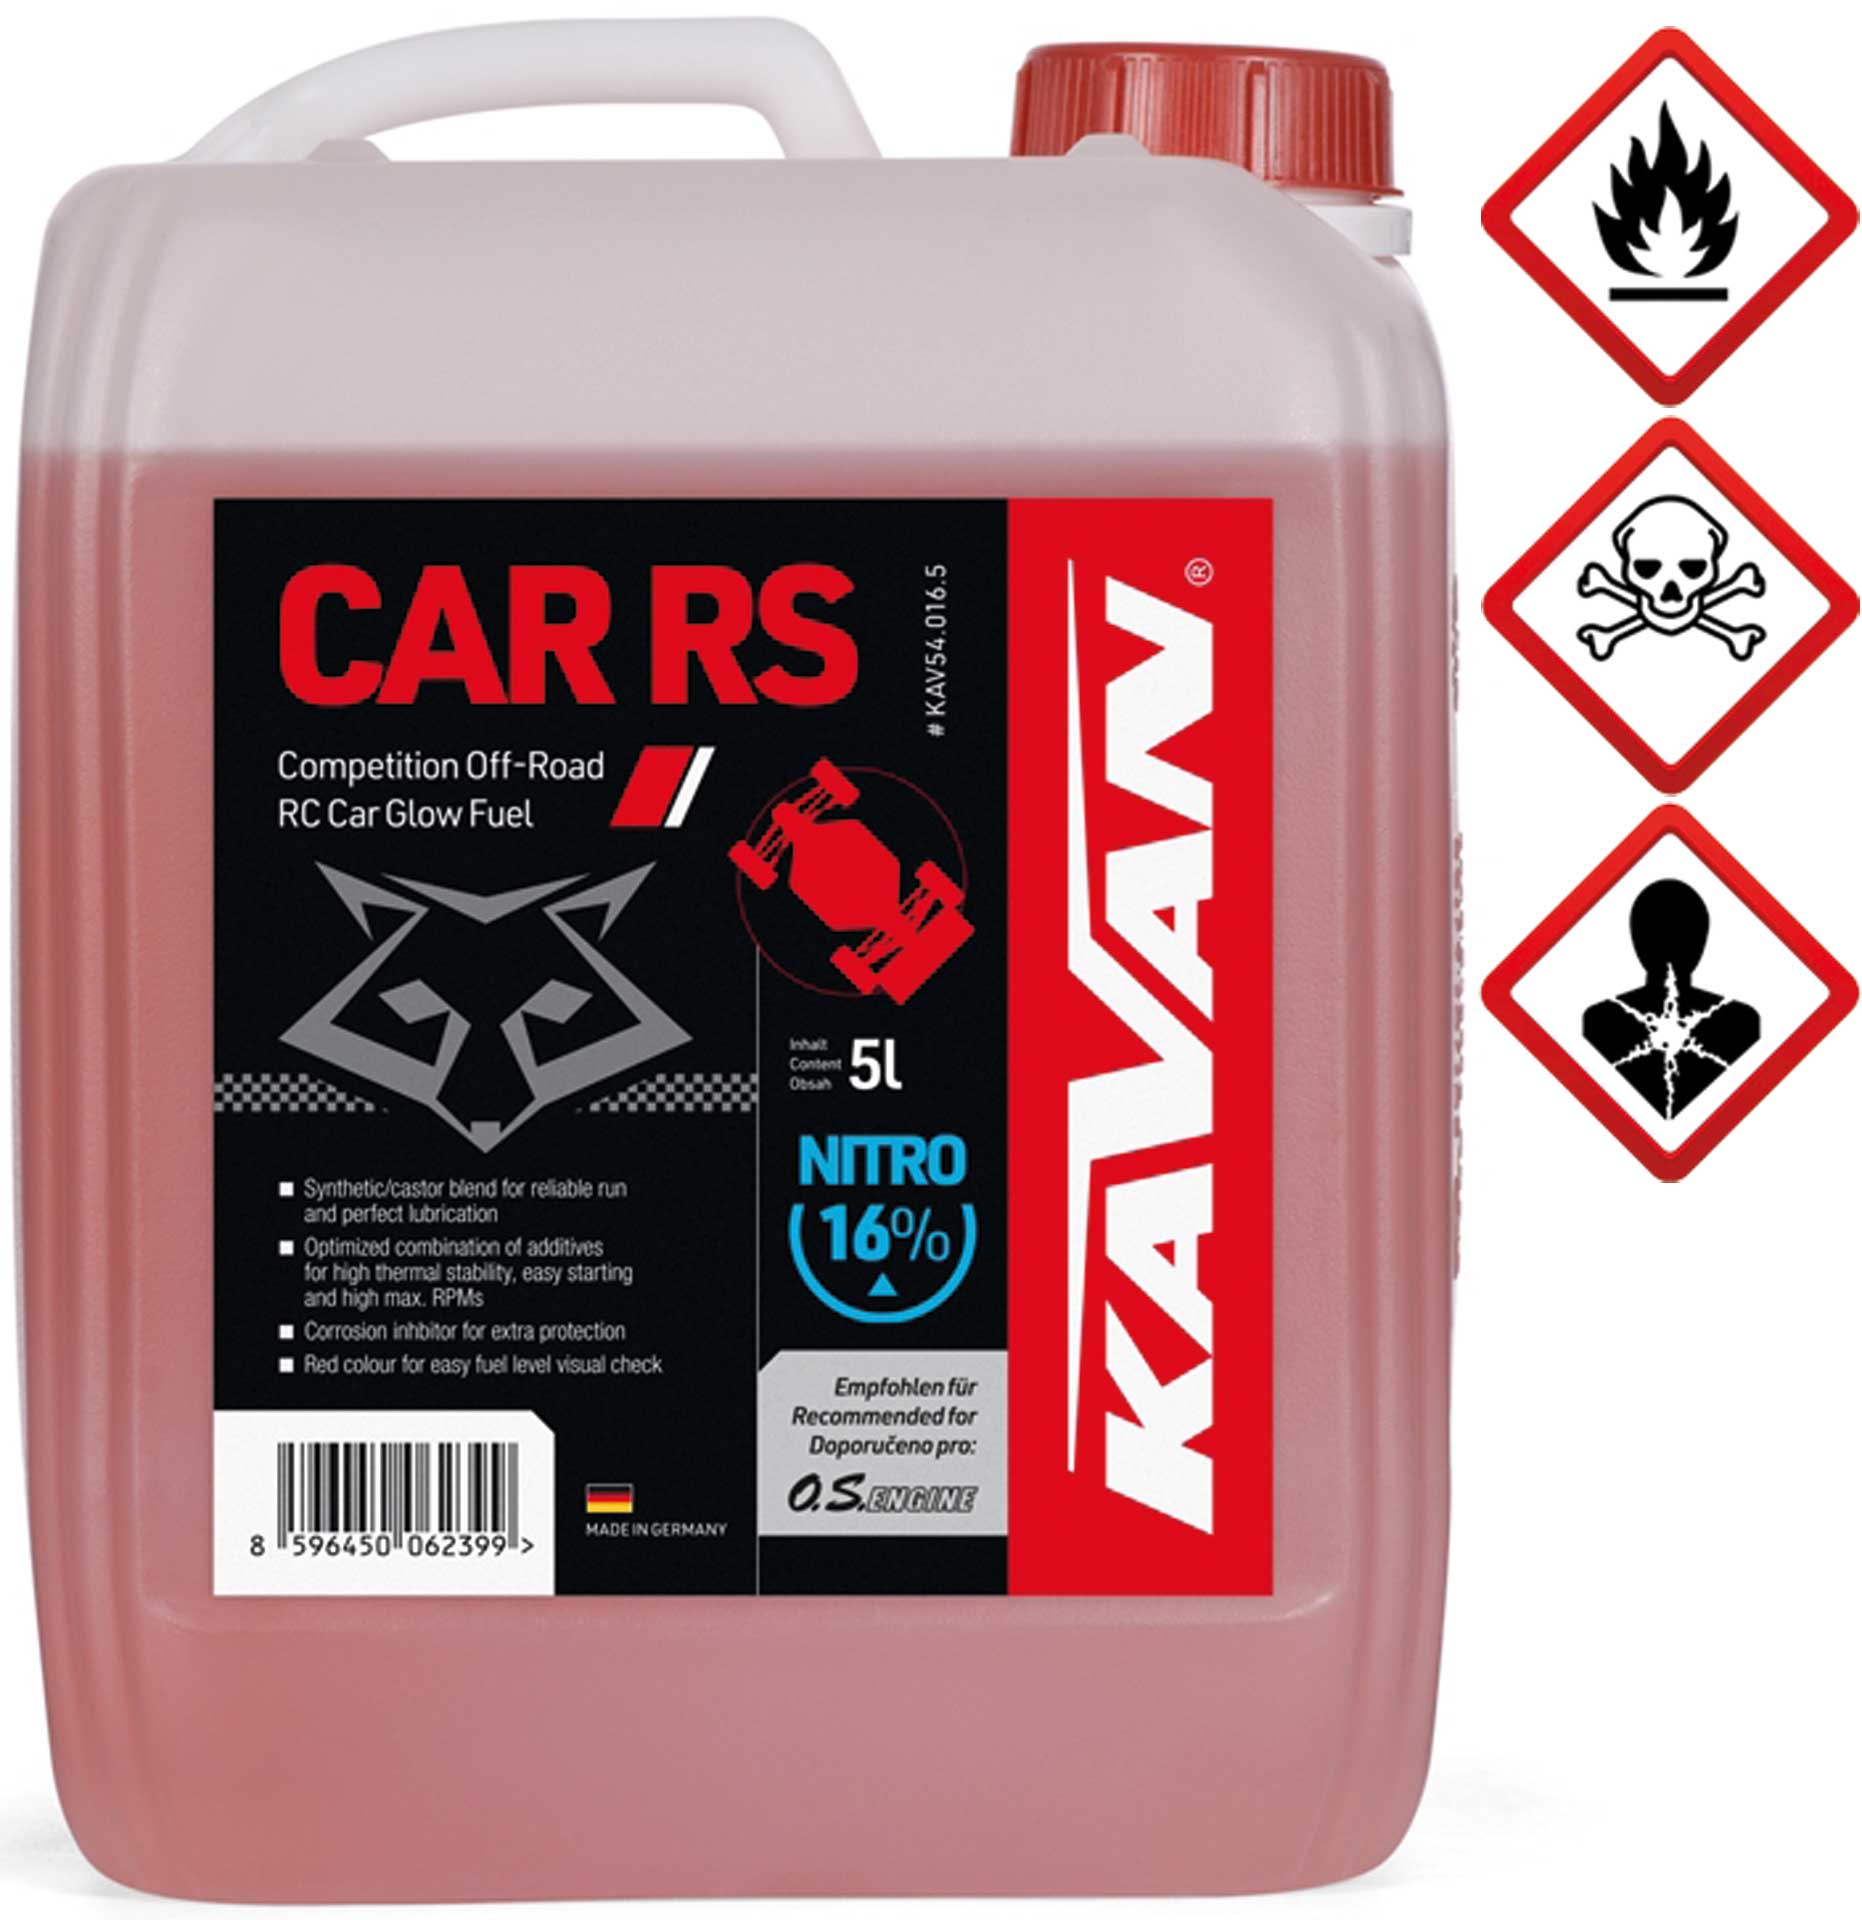 KAVAN Car RS 16% Off Road Nitro 5 Liter Kraftstoff, Sprit, Treibstoff für Glühzünder-Motoren